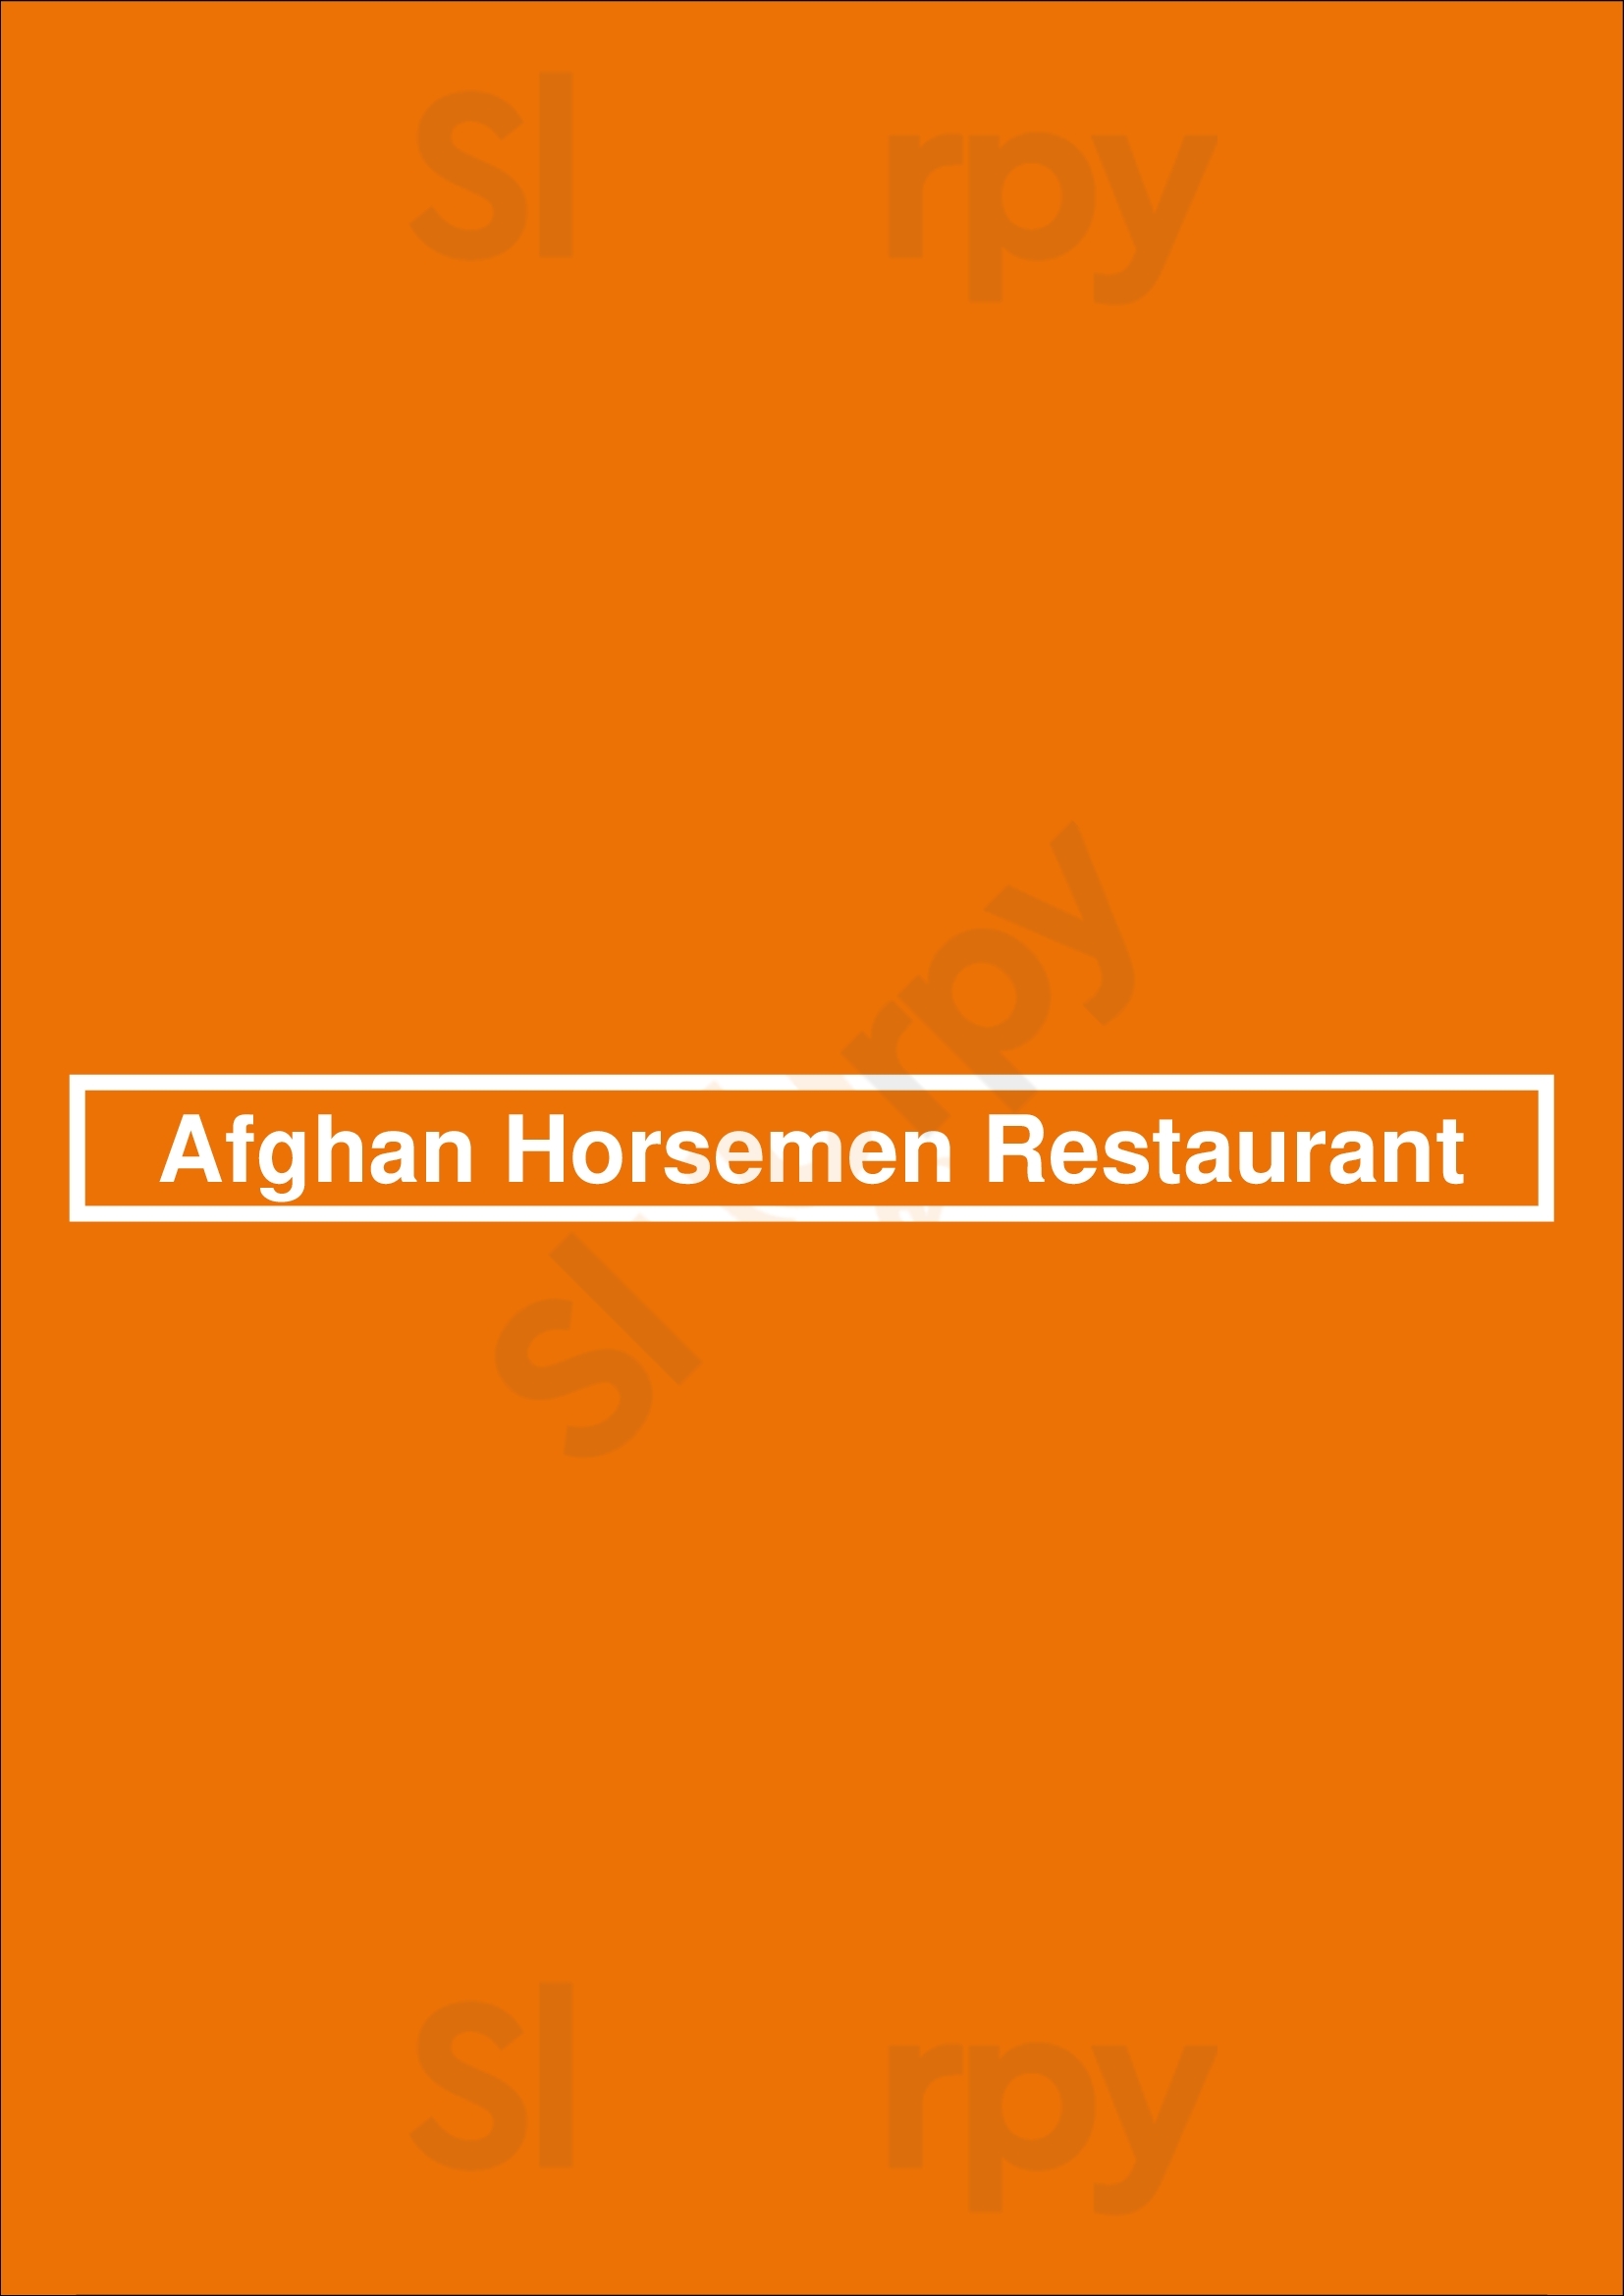 Afghan Horsemen Restaurant Vancouver Menu - 1